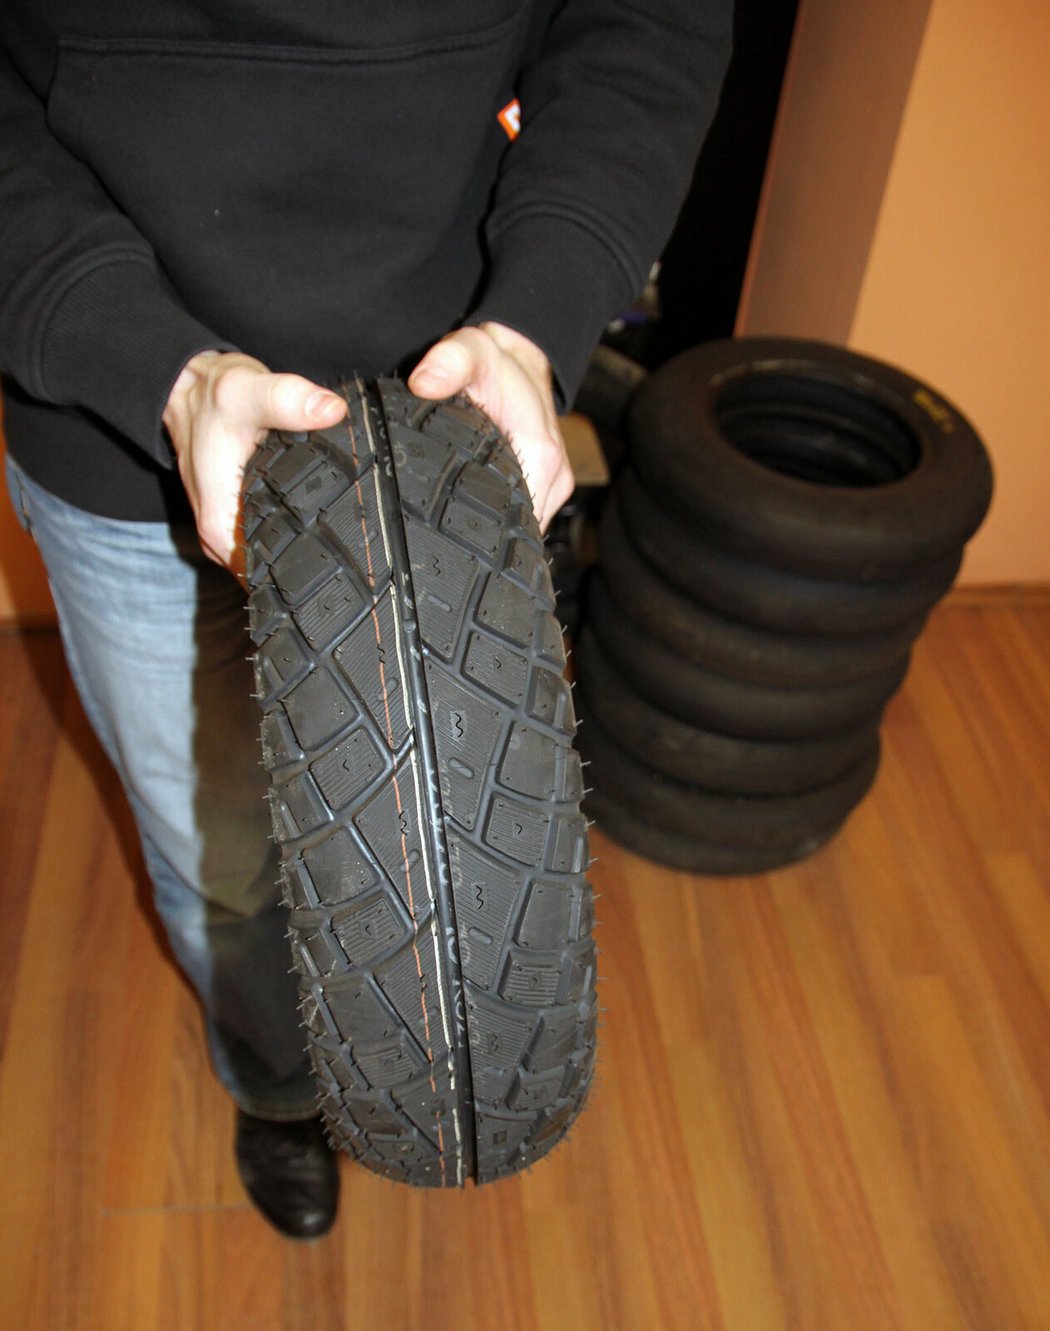 Víte, že existují zimní pneumatiky pro motorky a skútry? Mají hrubší dezén a měkčí směs, vypadají spíš jako terénní. Nabídka na trhu je značně omezená (Michelin, Haidenau) a dodávají se většinou na objednávku.